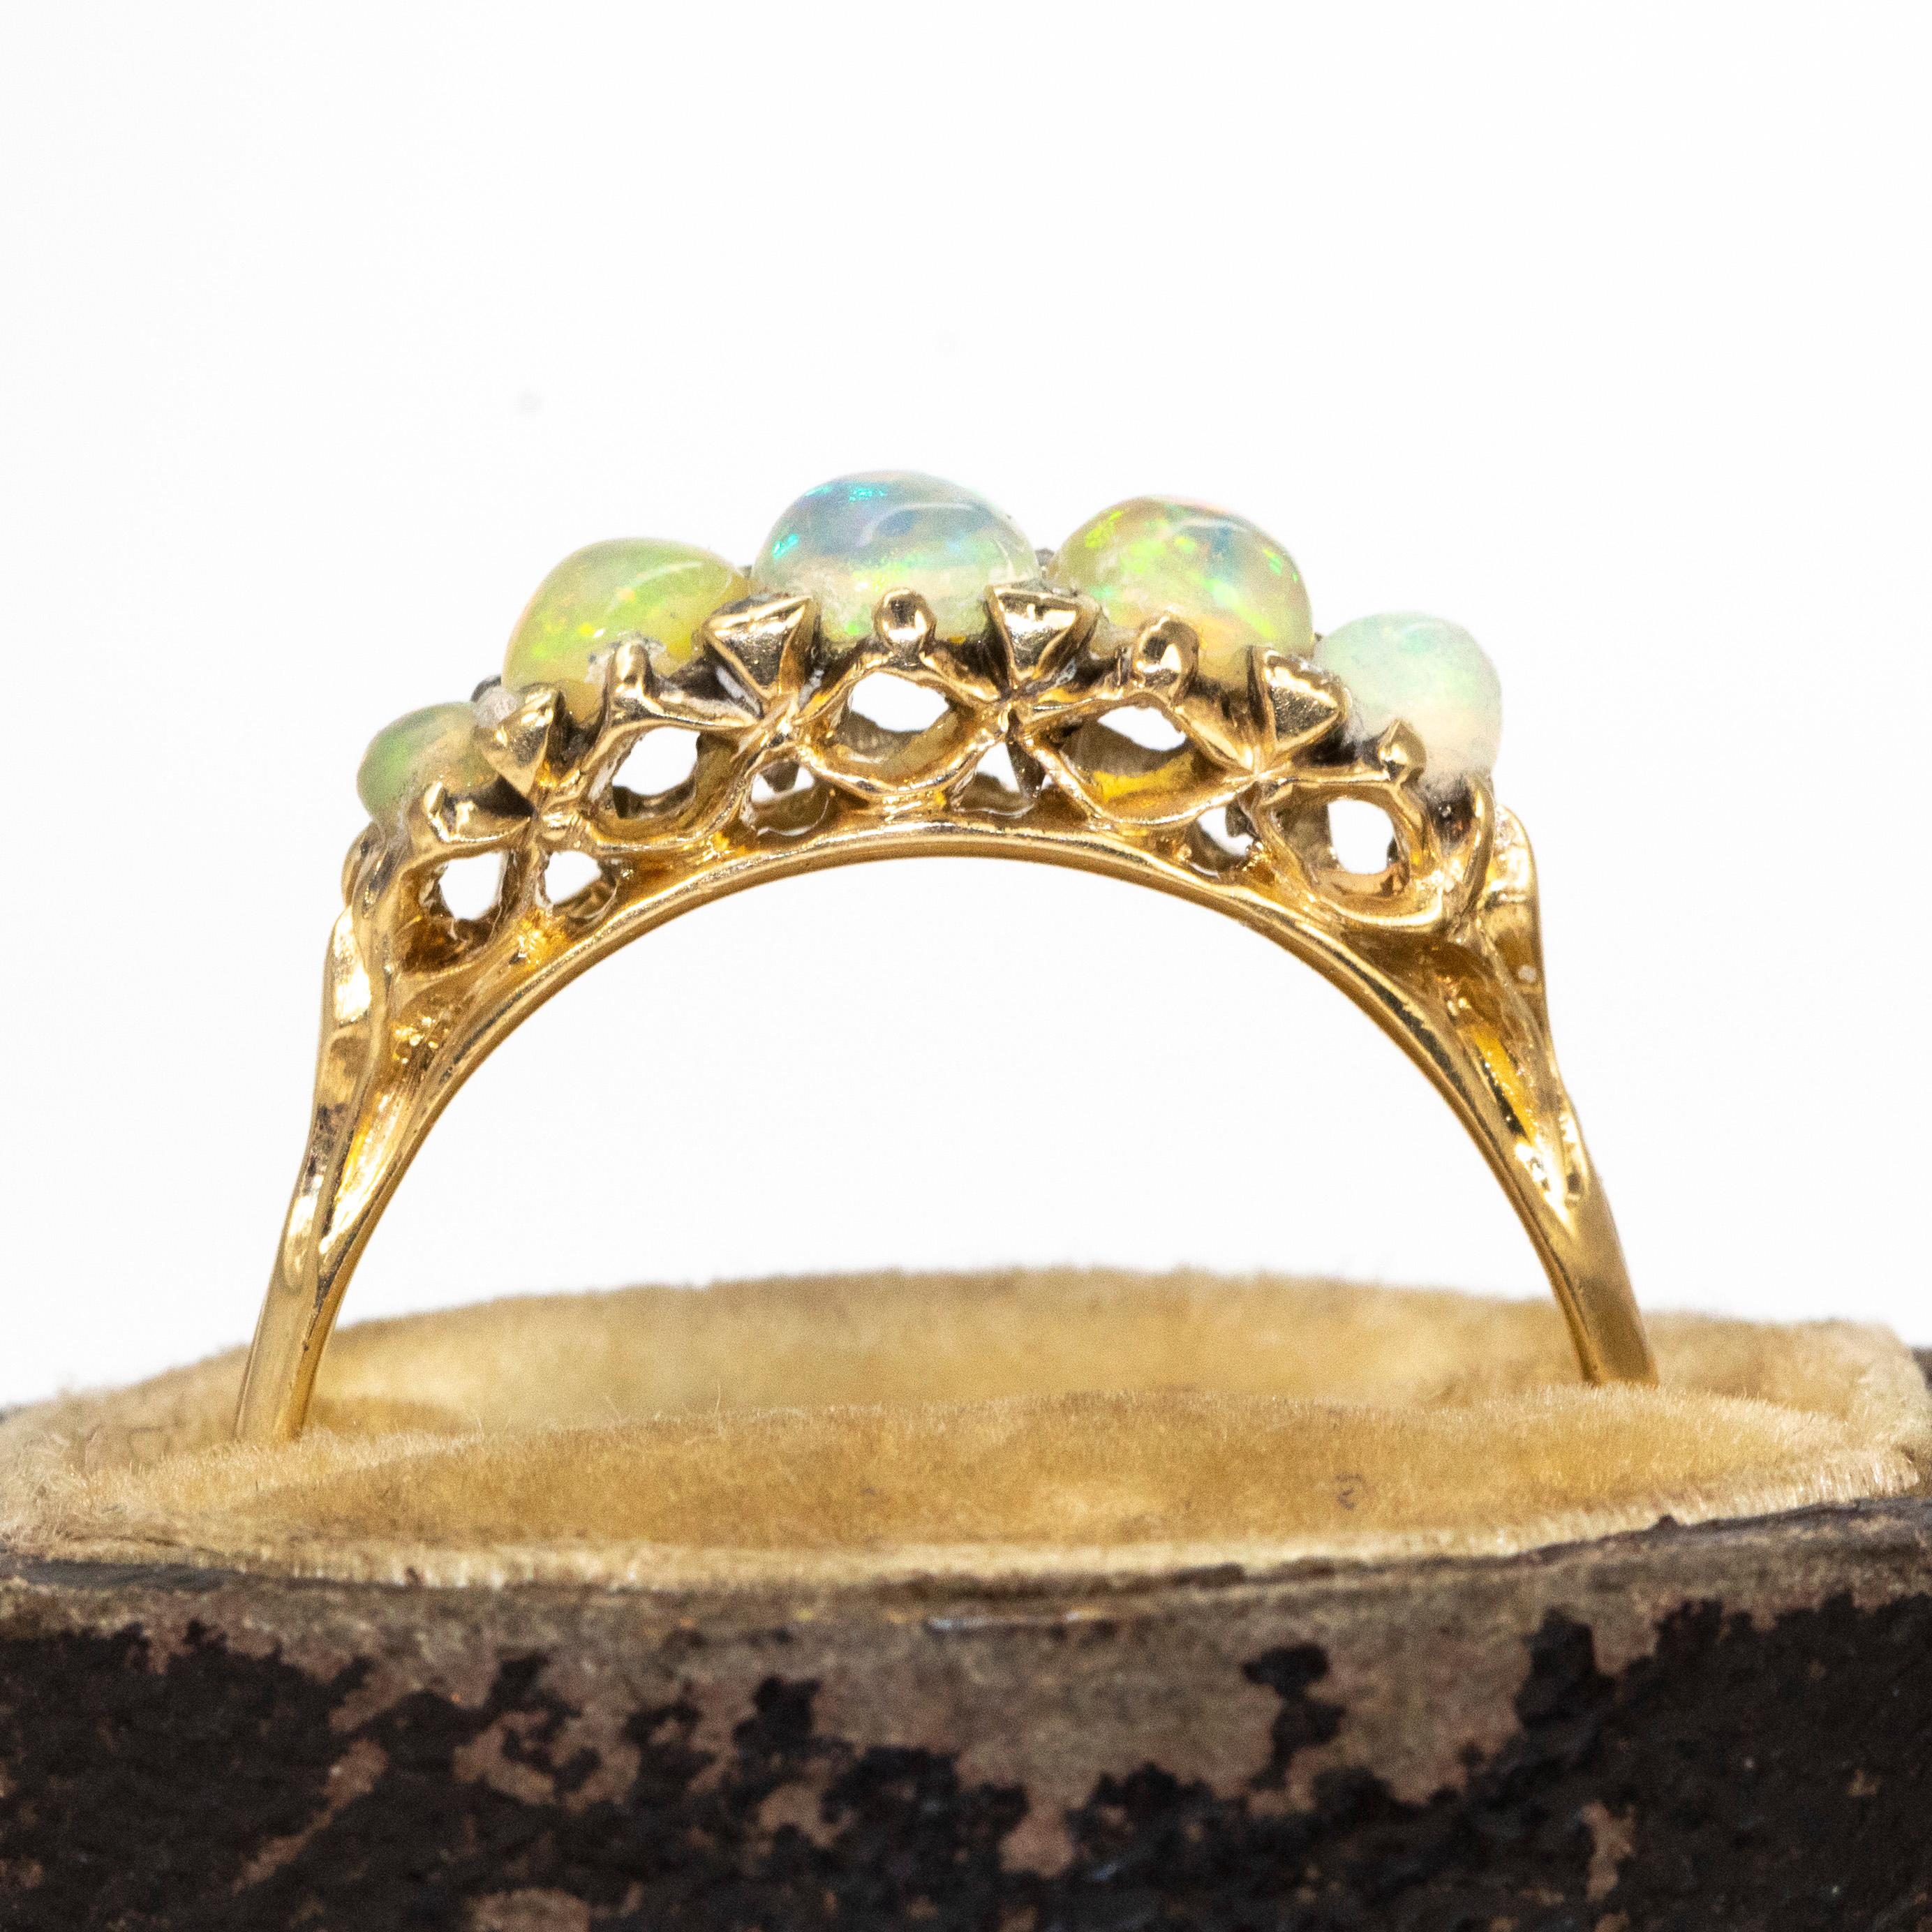 Dieser atemberaubende Ring mit fünf Opal-Cabochons ist mit schimmernden Opalen besetzt, die in ihrer Größe leicht gestaffelt sind, und zwischen ihnen sitzen Diamanten im Rosenschliff. 

Ringgröße: O 1/2 oder 7 1/2
Bandbreite: 6mm

Gewicht: 2,46g